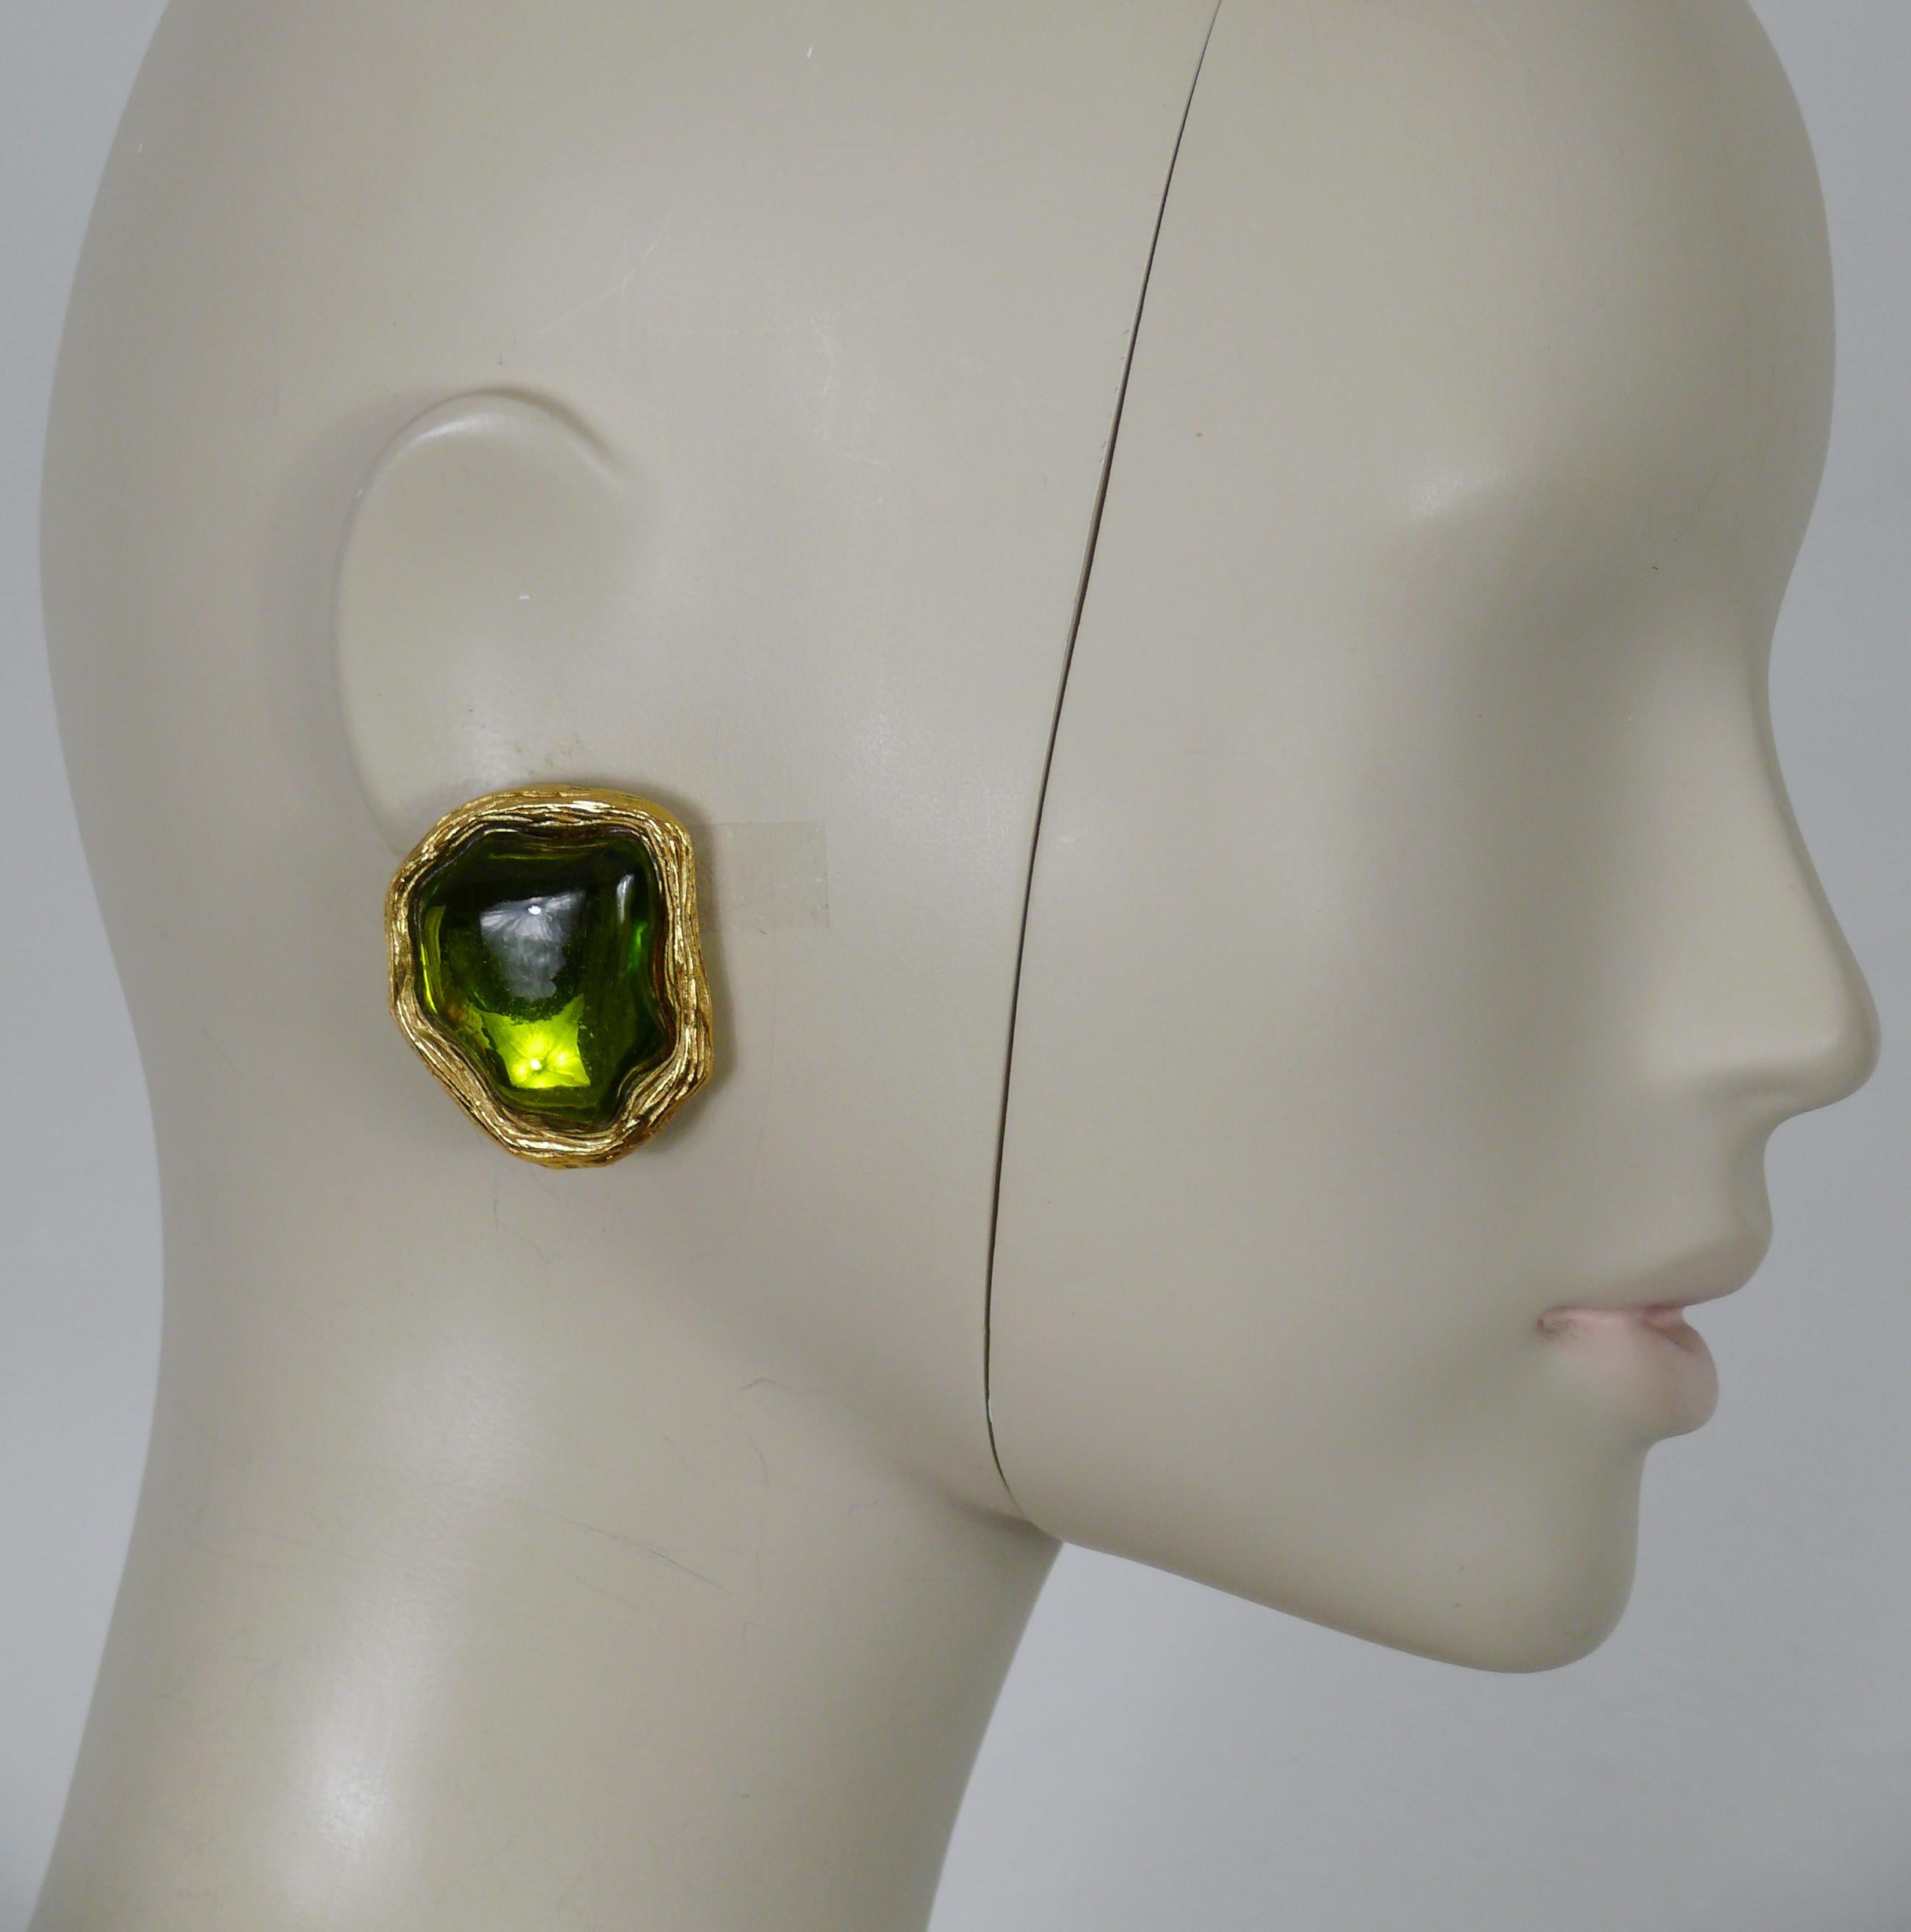 CHARLES JOURDAN Vintage-Ohrringe in strukturiertem Goldton, verziert mit einem grünen Harz-Cabochon.

Prägung CHARLES JOURDAN Paris.

Ungefähre Maße: Höhe ca. 3,8 cm (1,50 Zoll) / max. Breite ca. 3,1 cm (1,22 Zoll).

Gewicht pro Ohrring: ca. 20